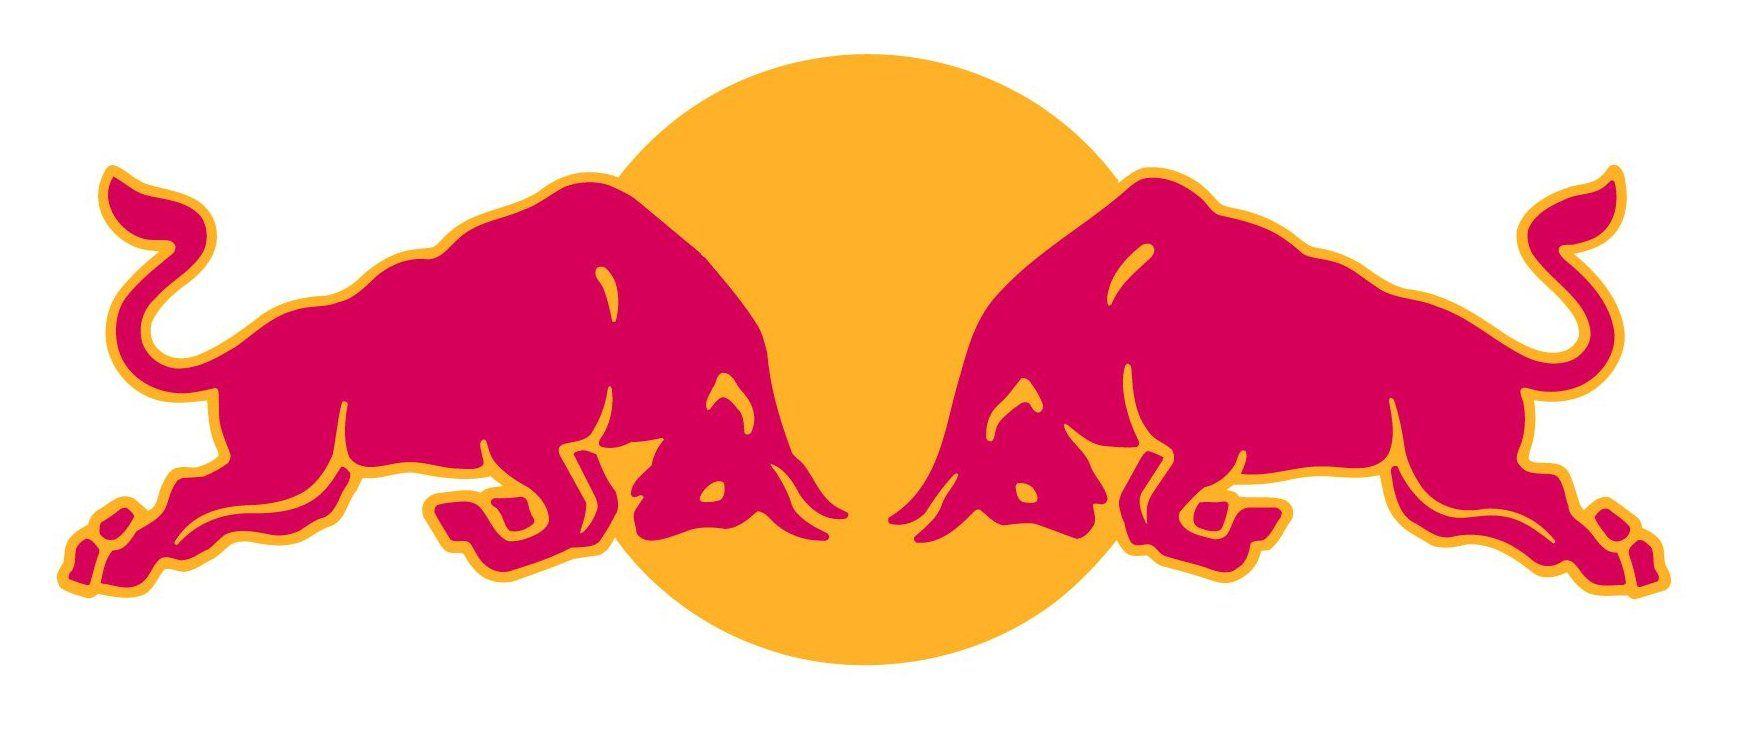 Famous Bull Logo - Red Bull #logo | Ethos Pathos Logo | Logos, Red bull, Bull logo